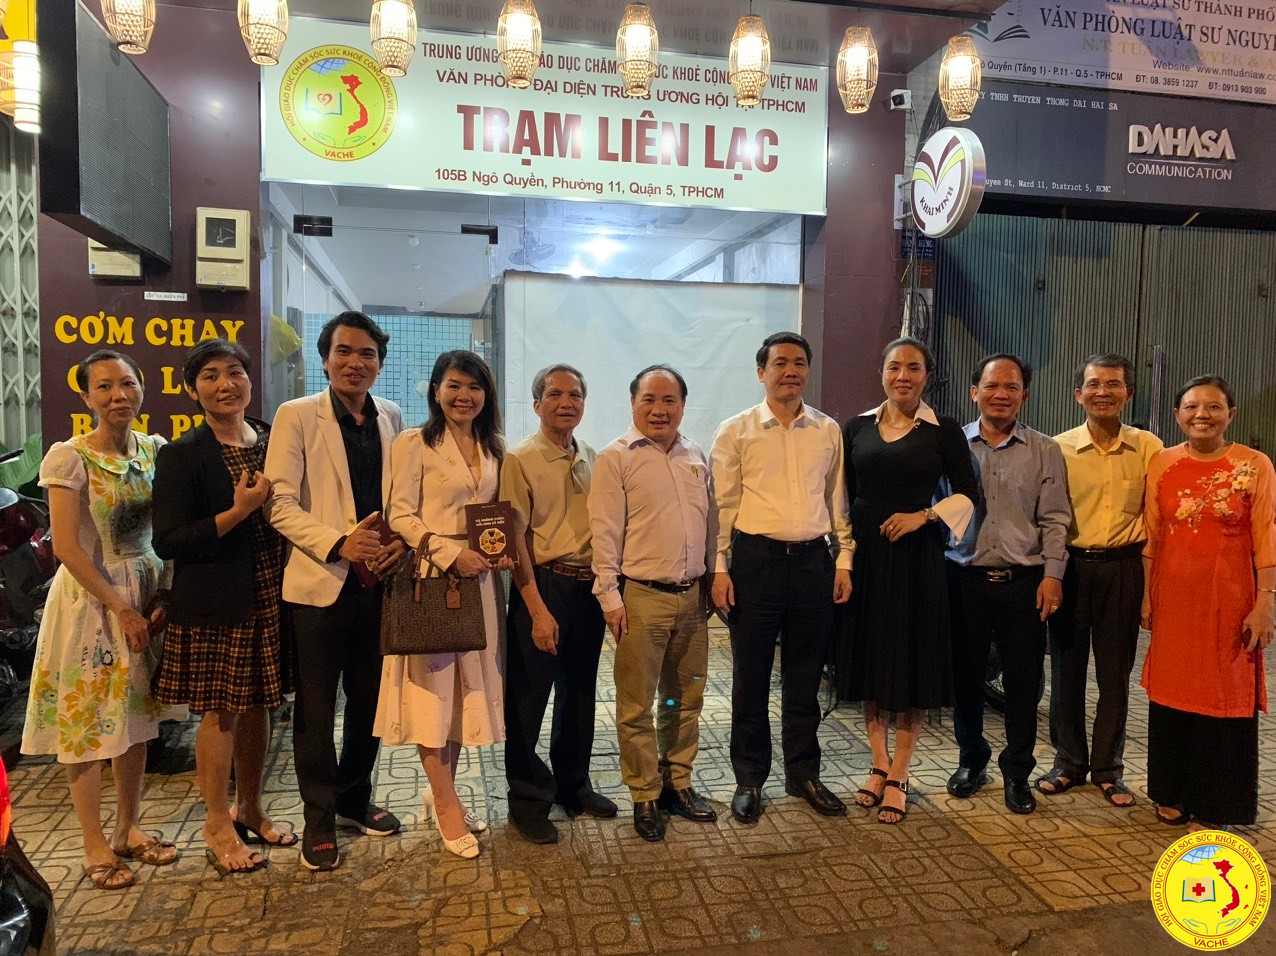 Lãnh đạo tw hội thăm trạm liên lạc vpđd hội tại Tp HCM và chi hội Thực Dưỡng Việt